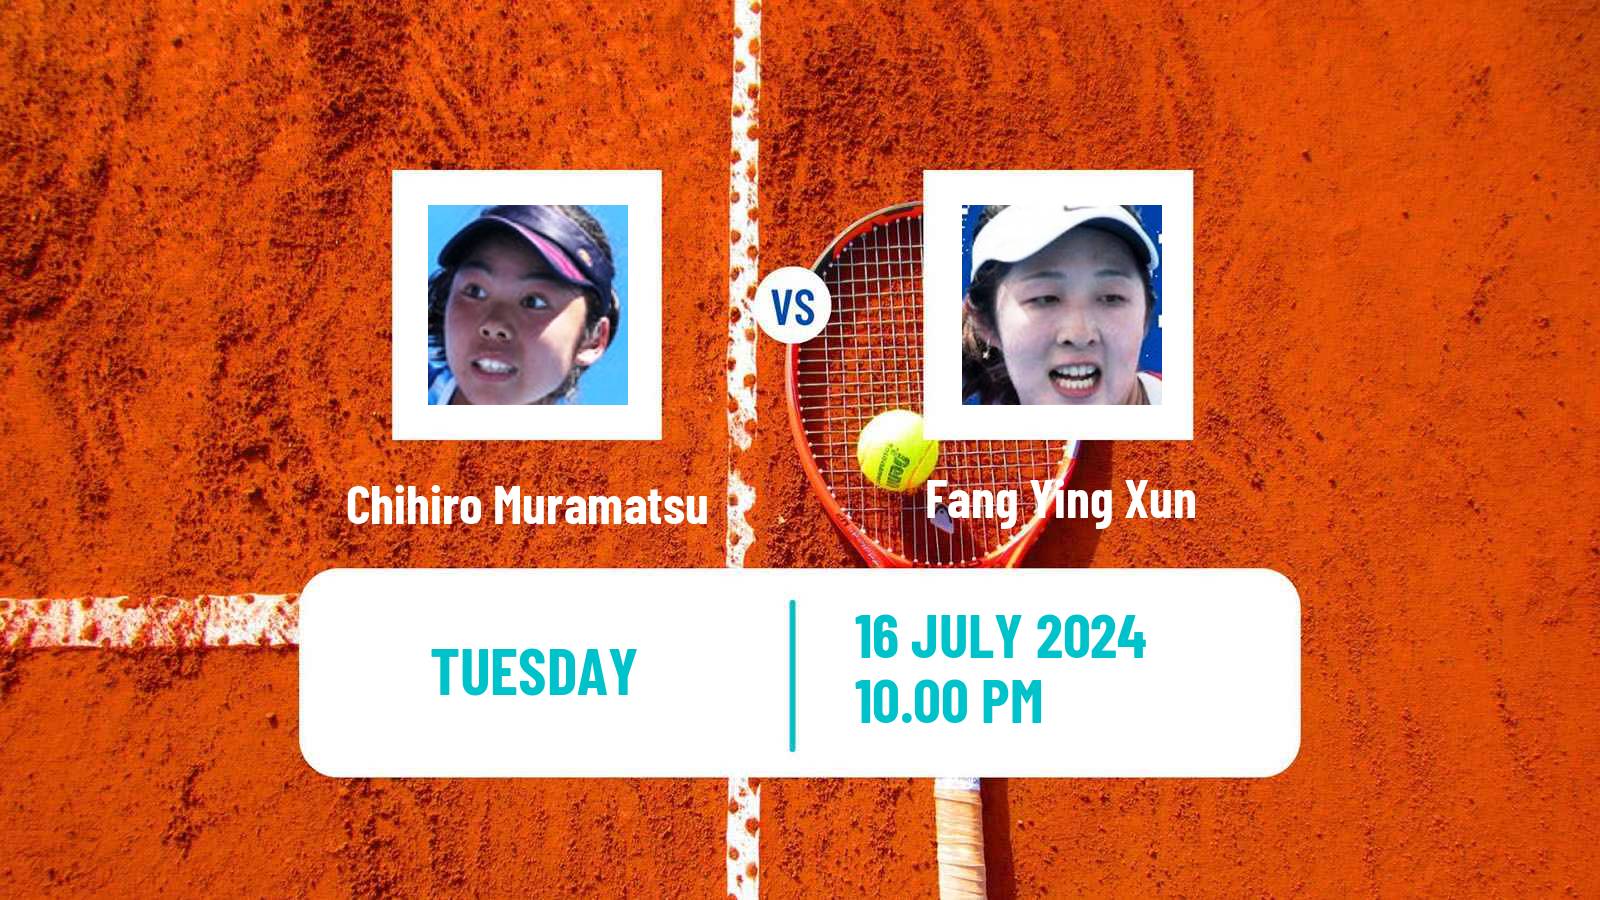 Tennis ITF W35 Tianjin 2 Women Chihiro Muramatsu - Fang Ying Xun